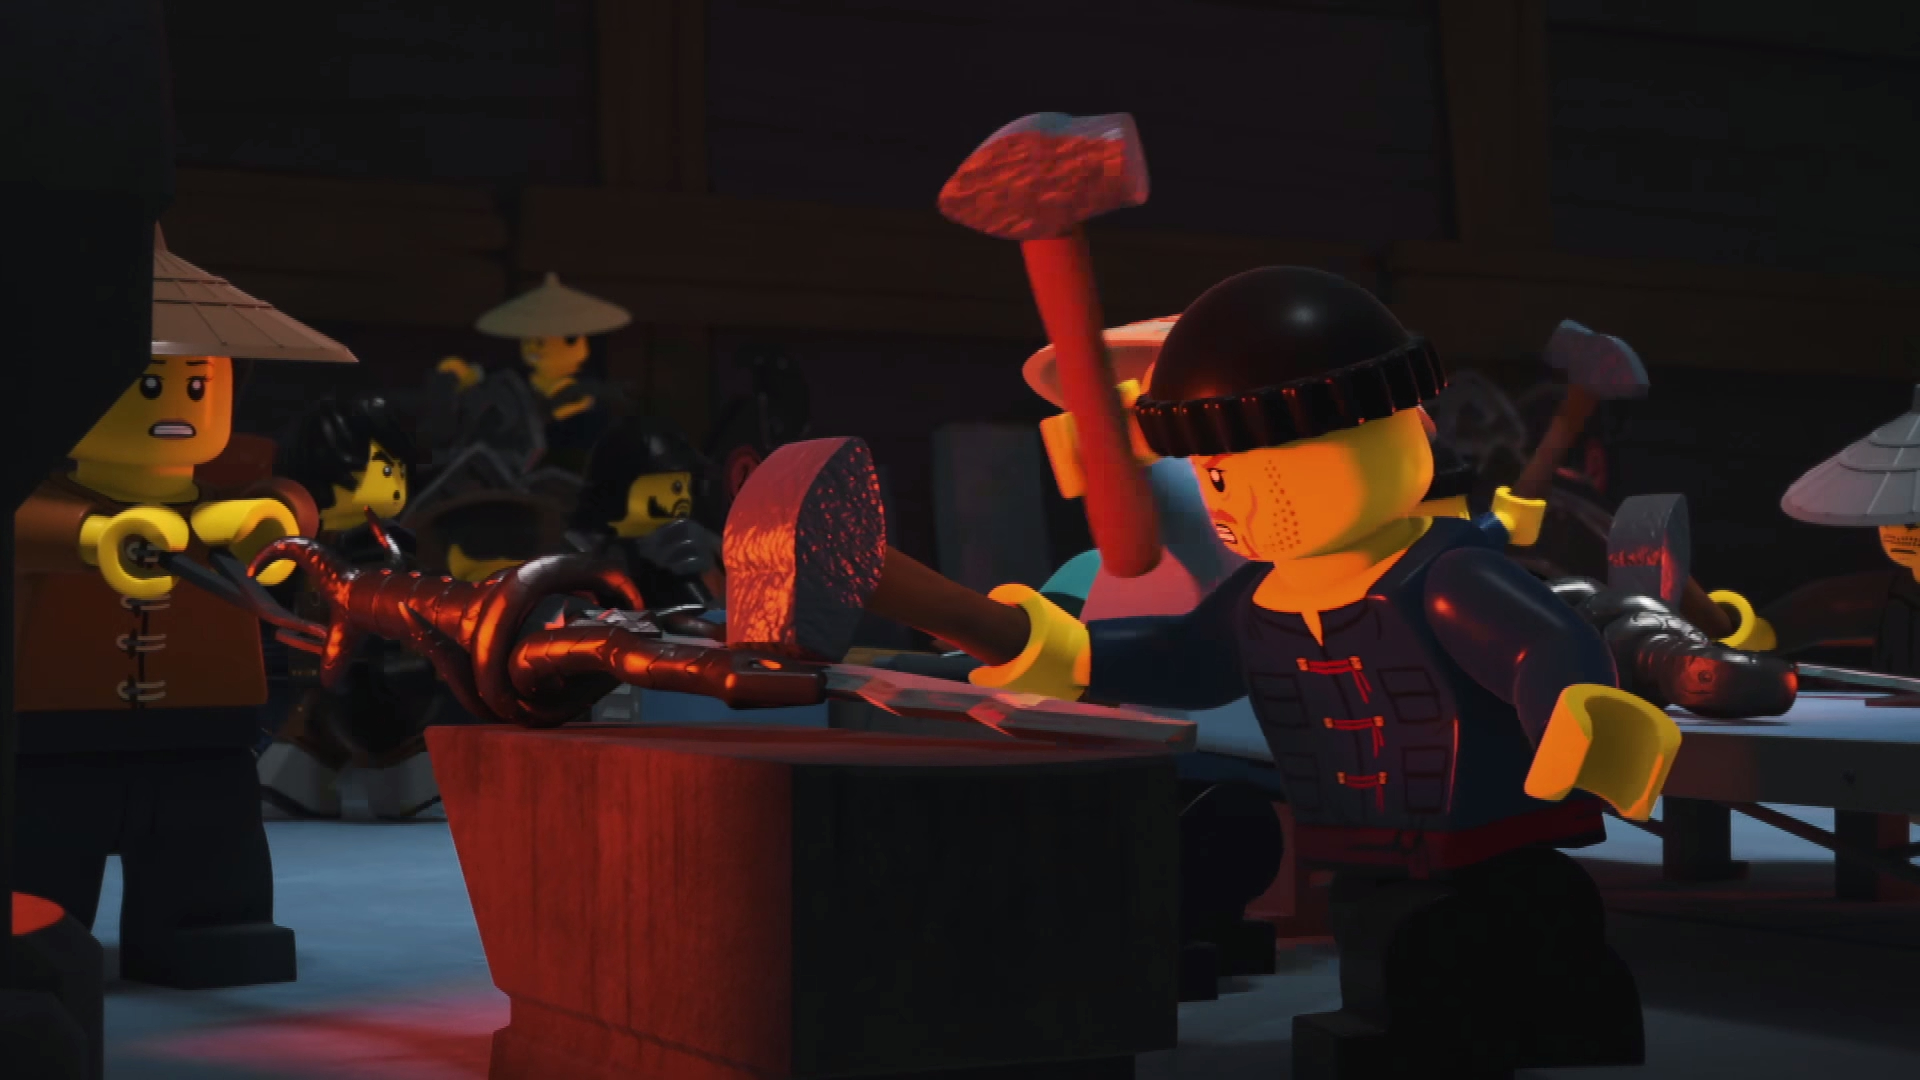 LEGO Ninjago Movie Hammer